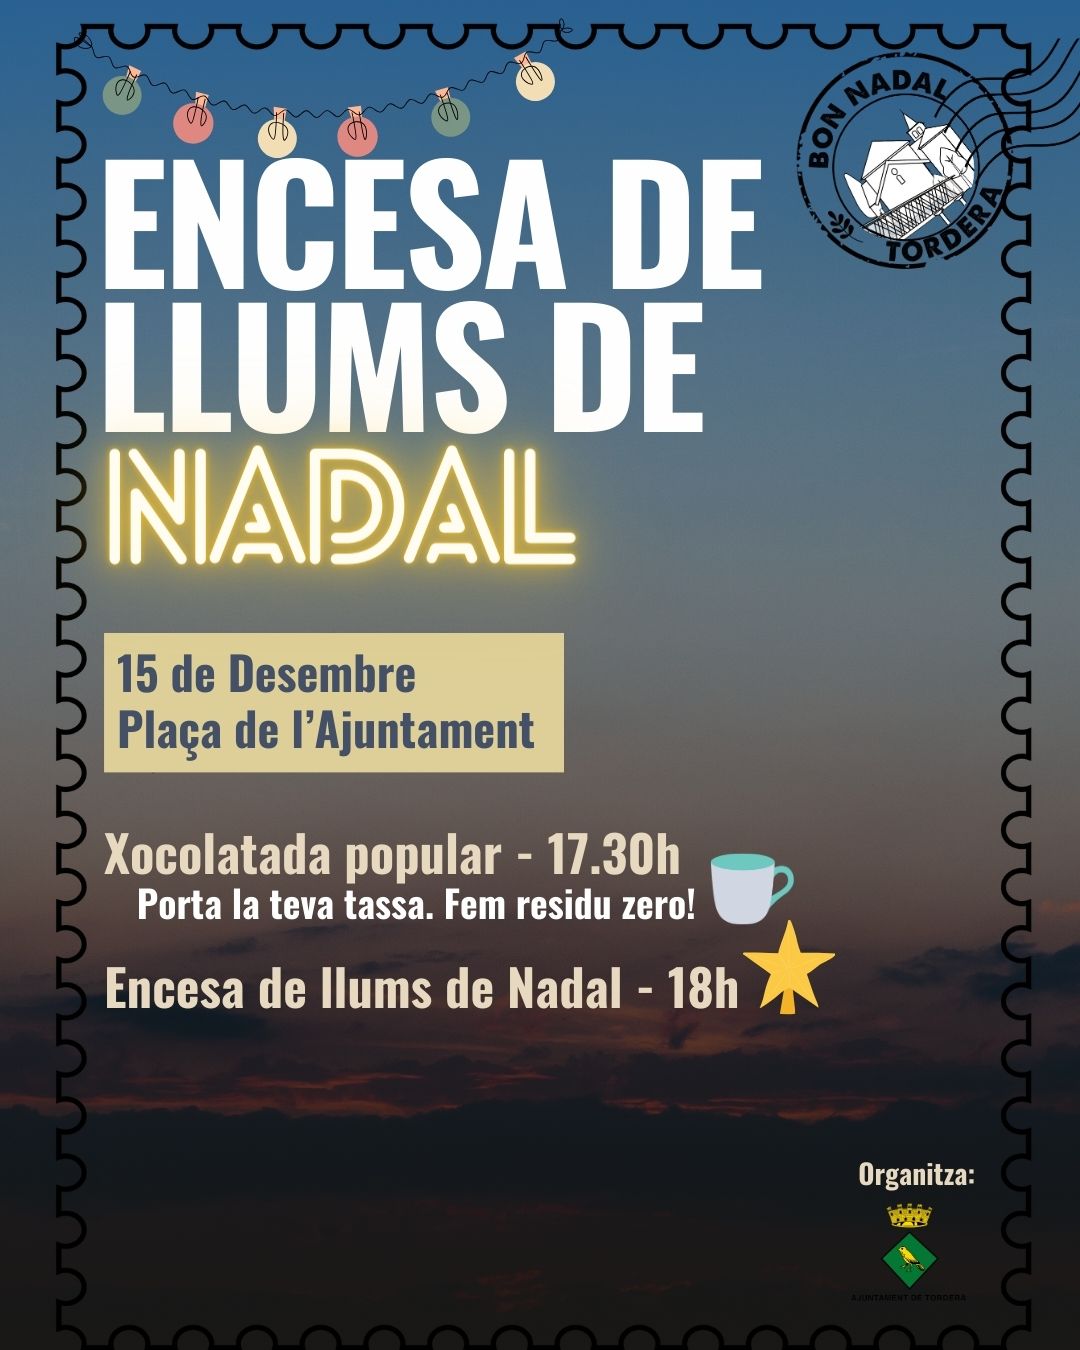 Aquest divendres 15 de desembre Tordera farà l'encesa de llums de Nadal de la plaça